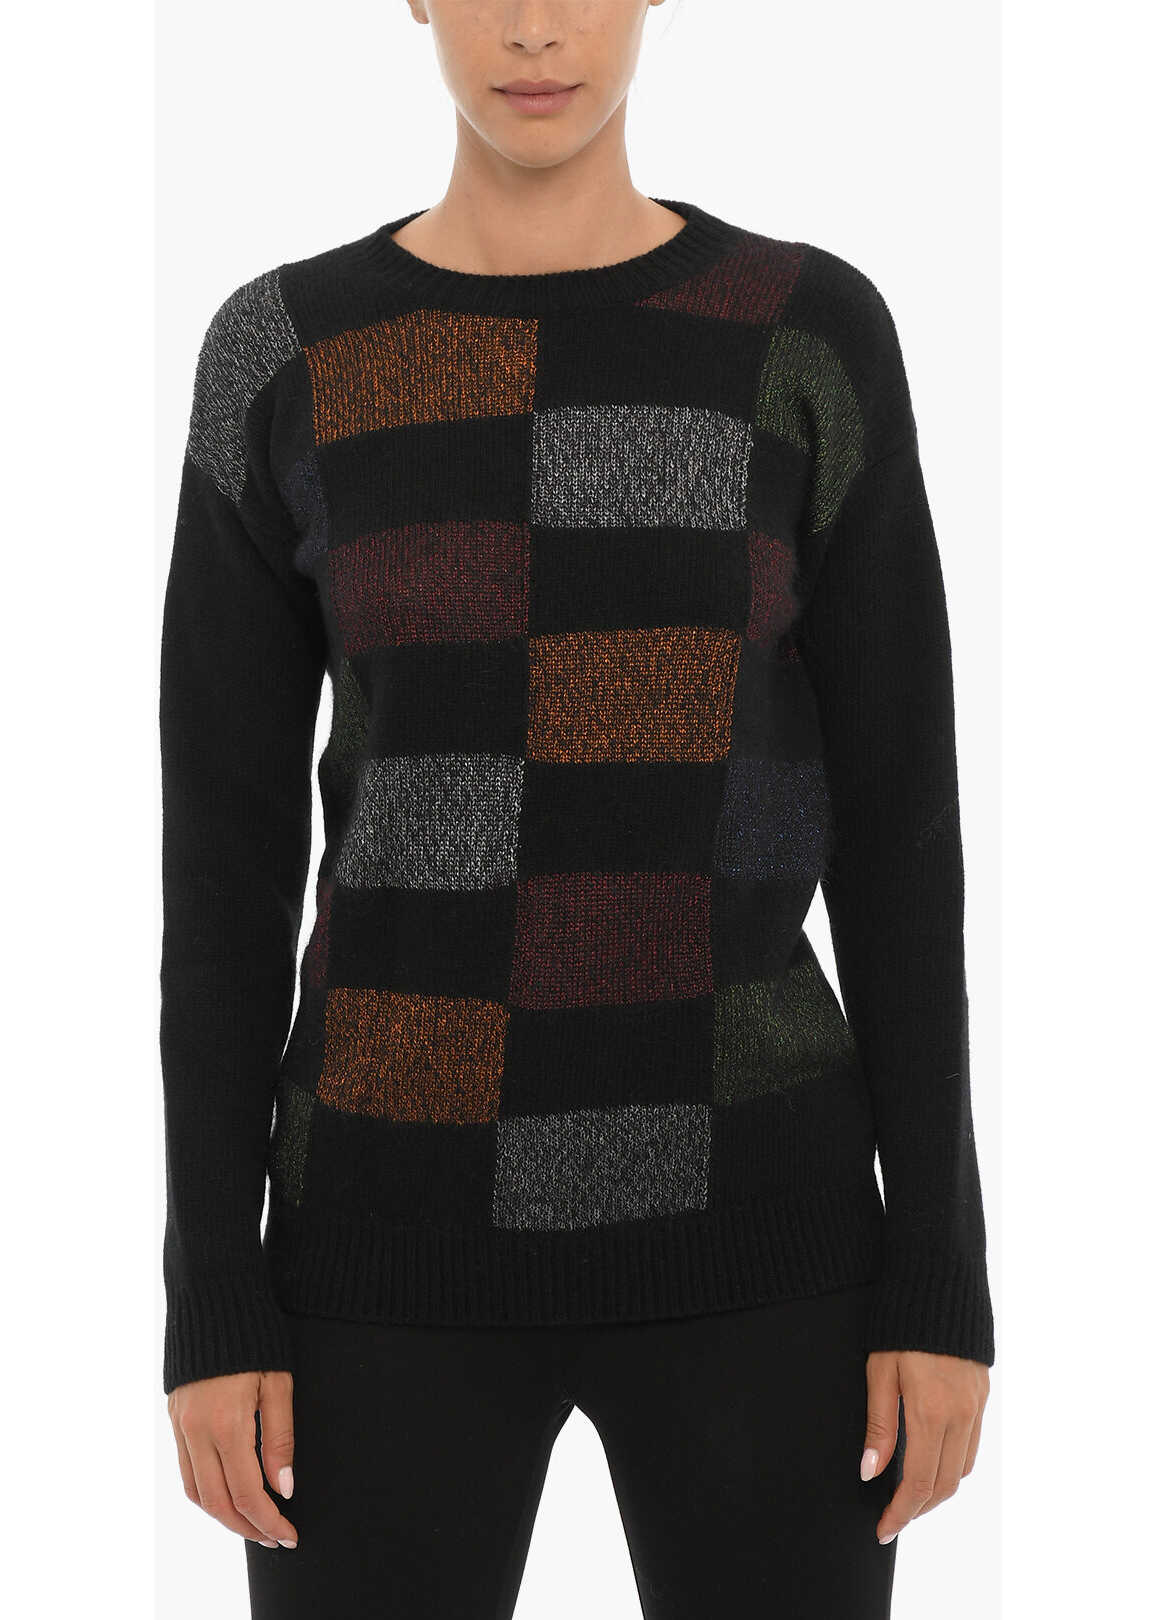 Woolrich Crew-Neck Sweater With Lurex Details Black